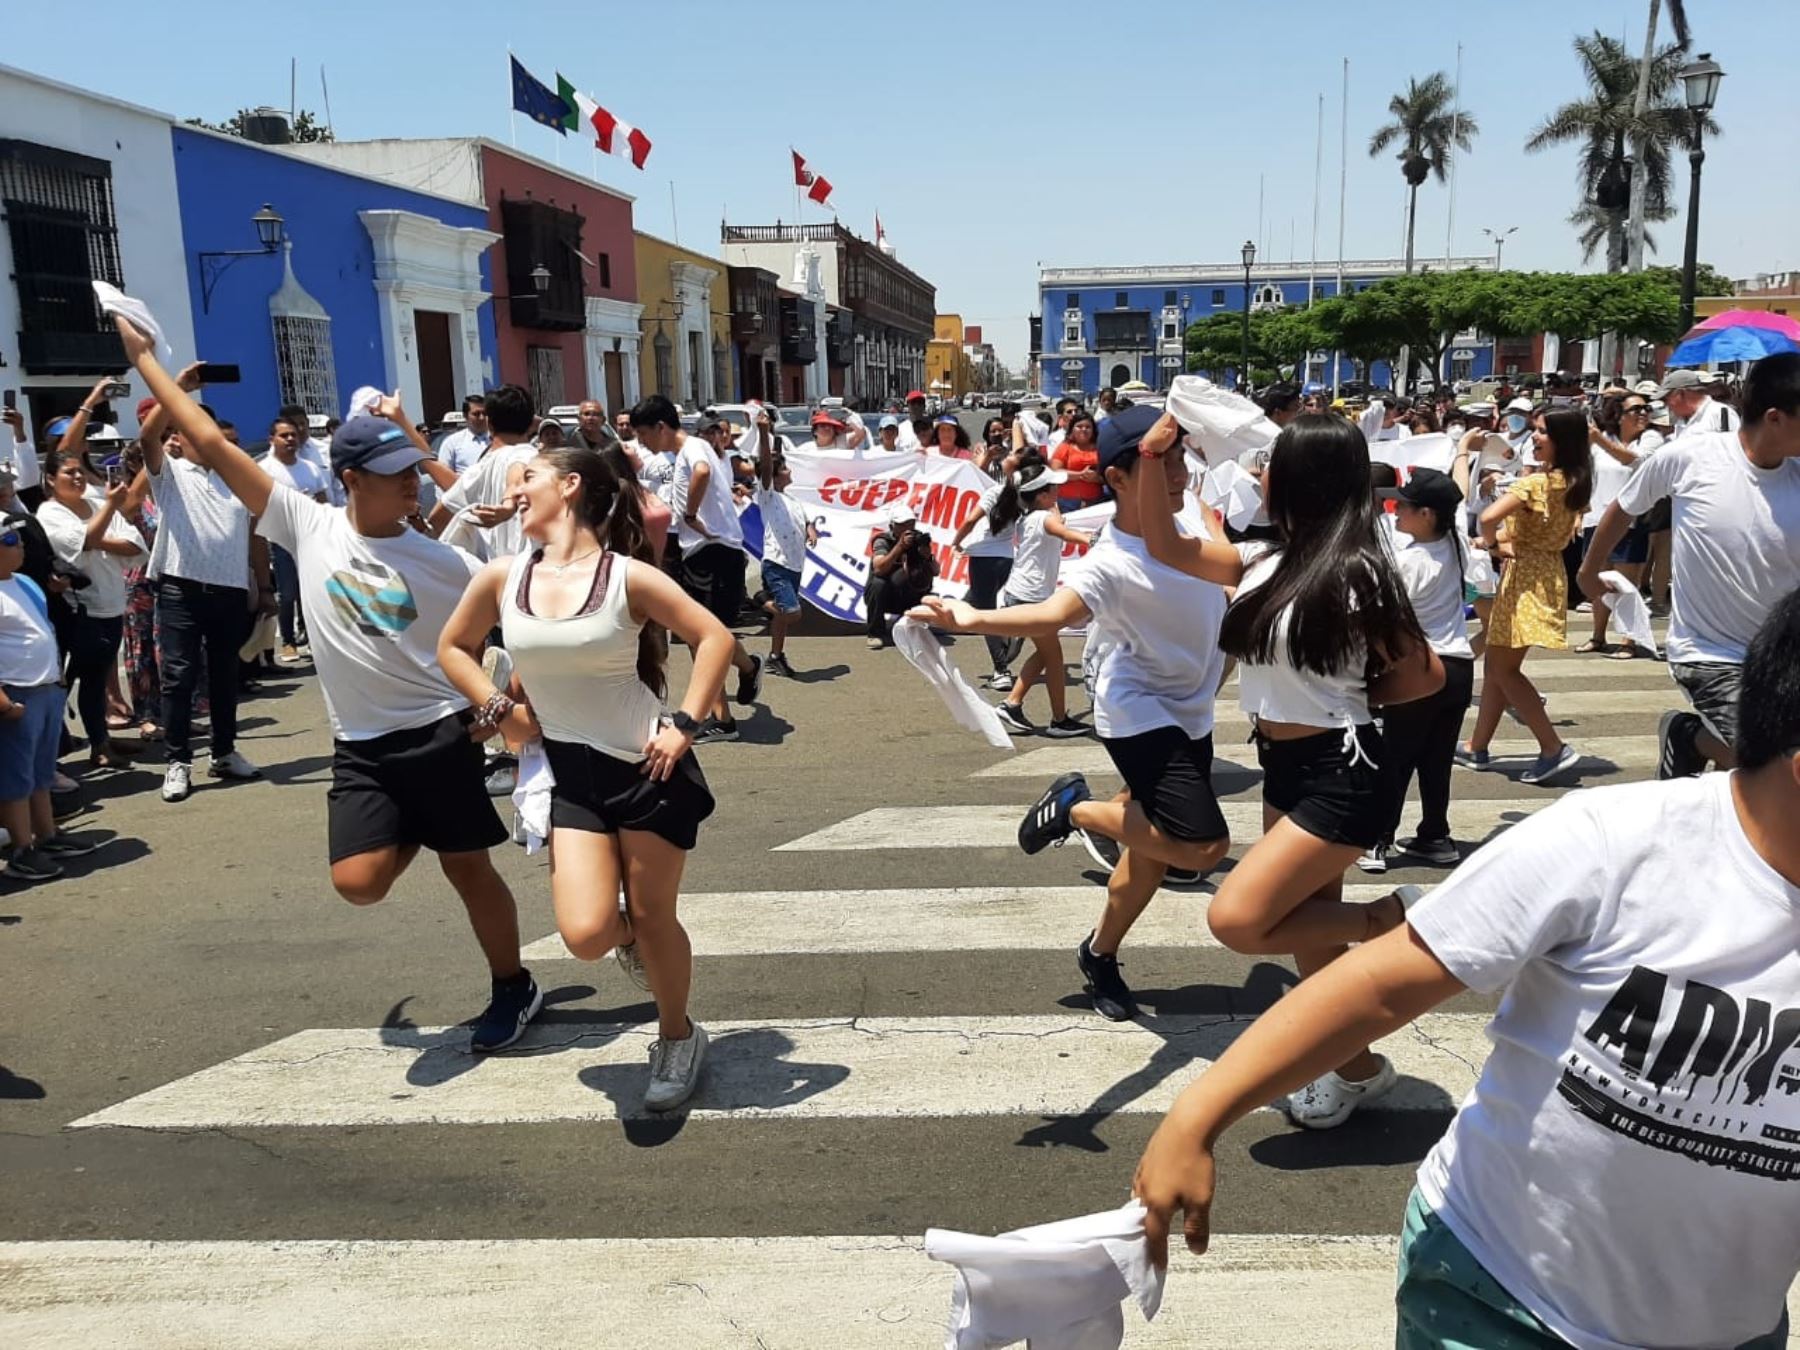 A ritmo de marinera, parejas de bailarines de marinera norteña demandaron a la municipalidad de Trujillo que el Concurso Nacional de ese baile se celebre en esa ciudad. Foto: Luis Puell